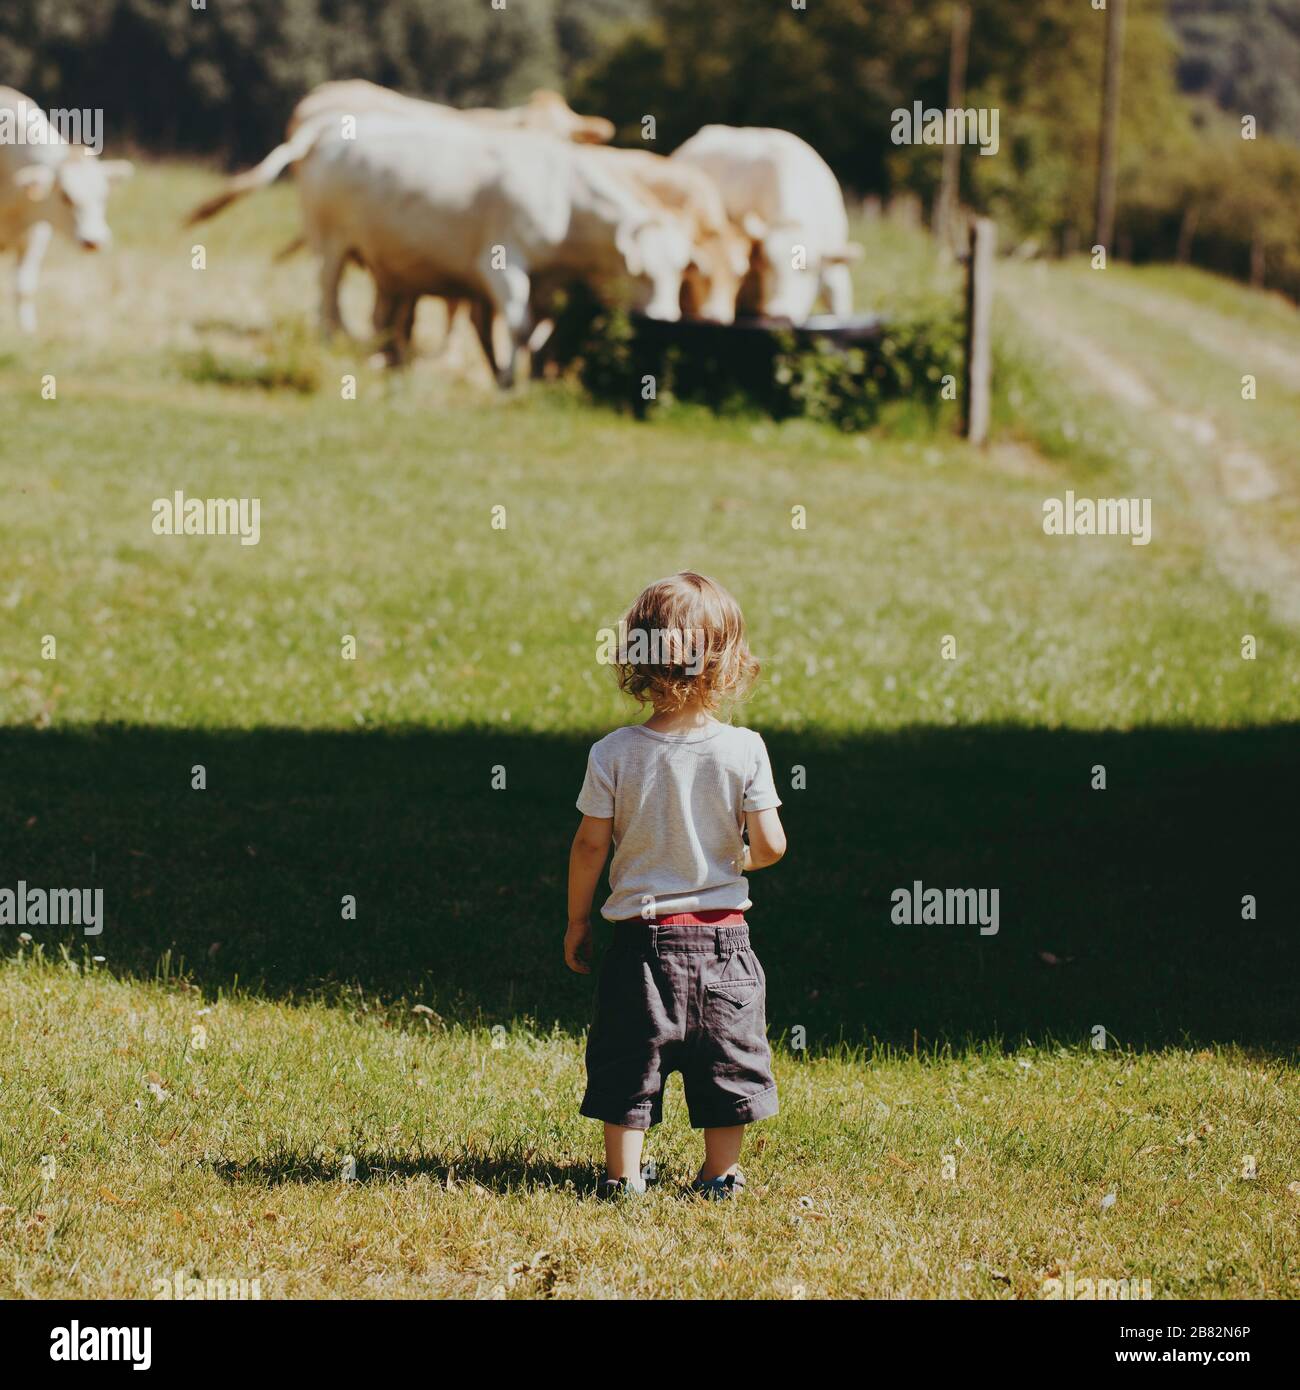 La vie en plein air sur une ferme dans la campagne en France, un petit garçon dans des moments magiques d'observation des vaches qui paissent dans les champs environnants. Banque D'Images